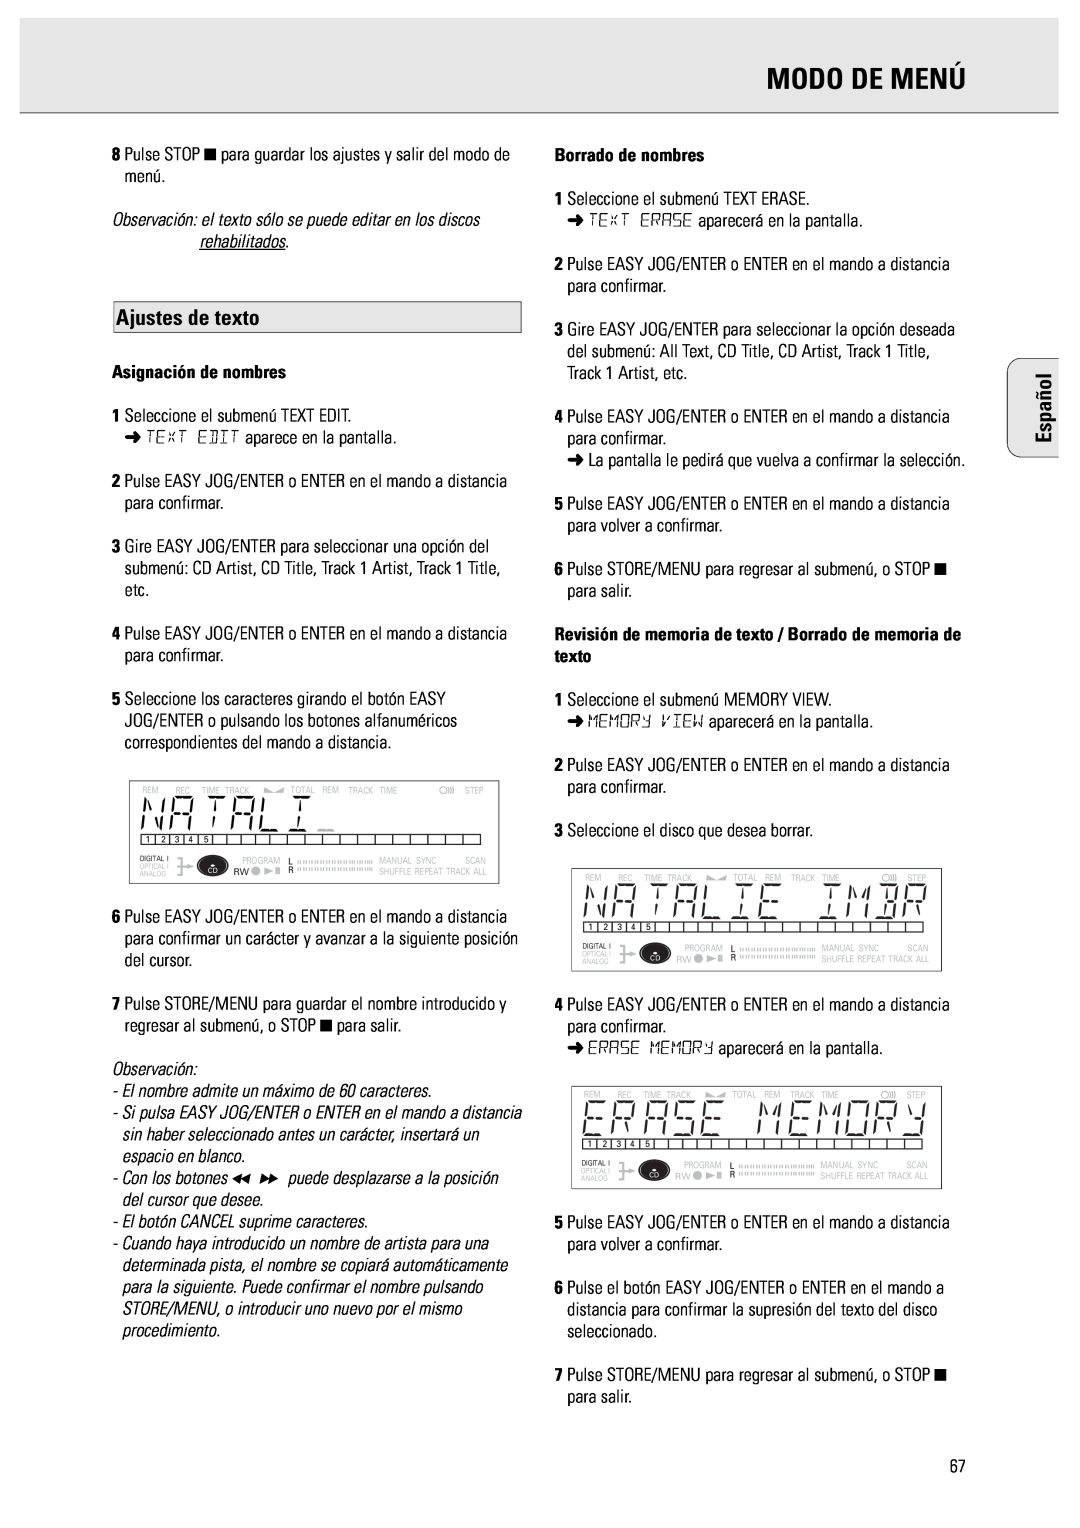 Philips CDR570 manual Modo De Menú, Ajustes de texto, Español, Observación, El nombre admite un máximo de 60 caracteres 